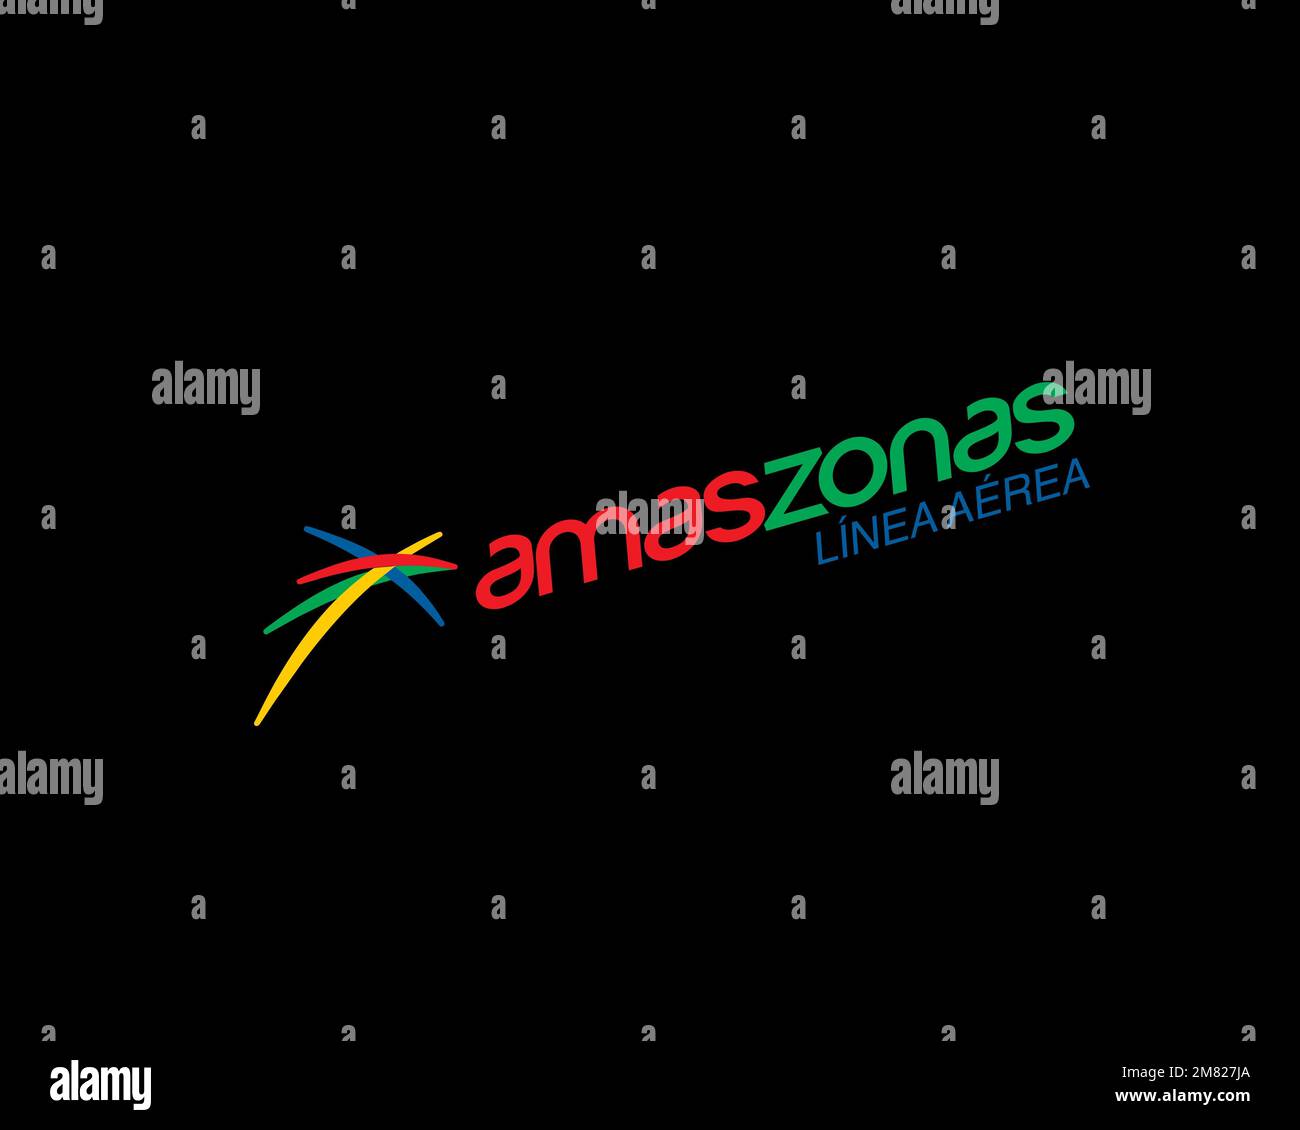 Linea Aerea Amaszonas, logo pivoté, fond noir Banque D'Images